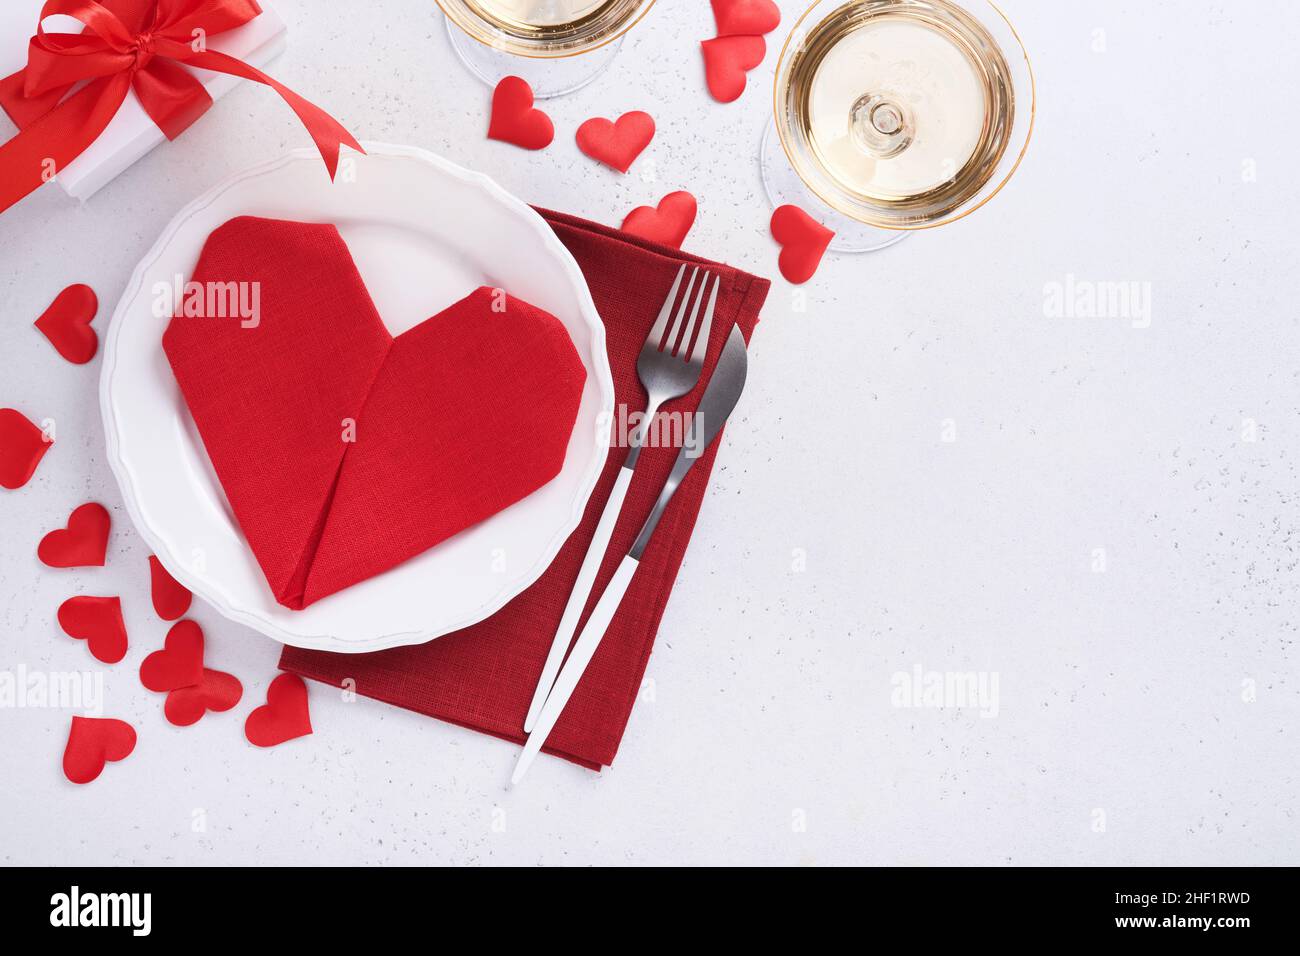 Table de jour de Valentinas couleur blanche avec argenterie blanche, serviette rouge pliée comme coeur, bougies, champagne, verres sur fond blanc pour greeti Banque D'Images